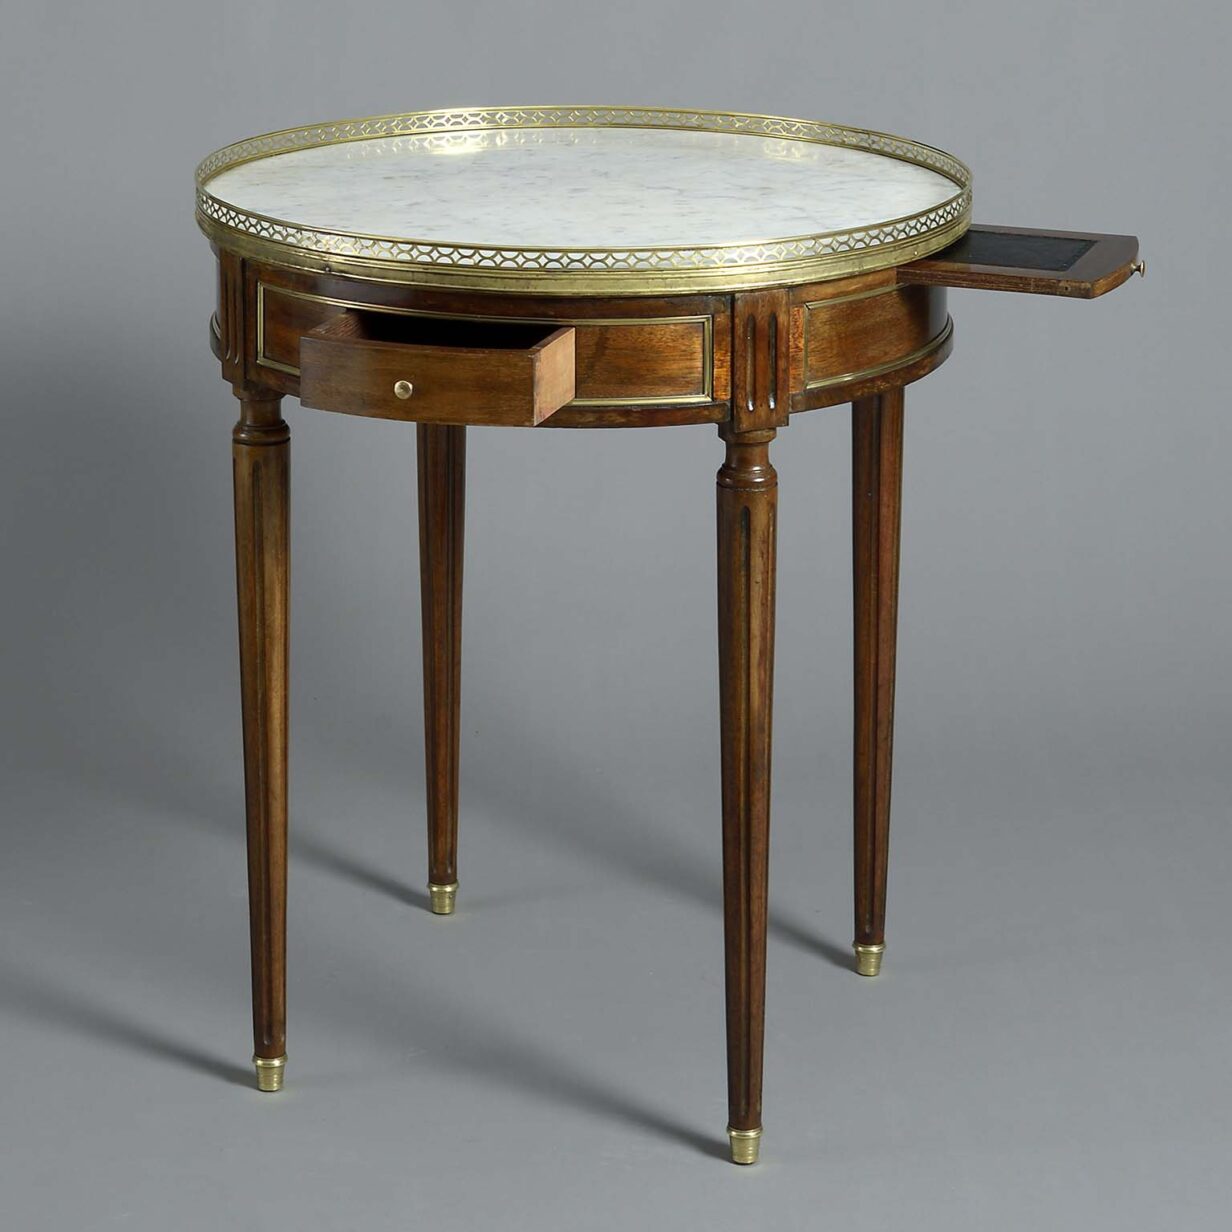 19th century mahogany bouillotte table